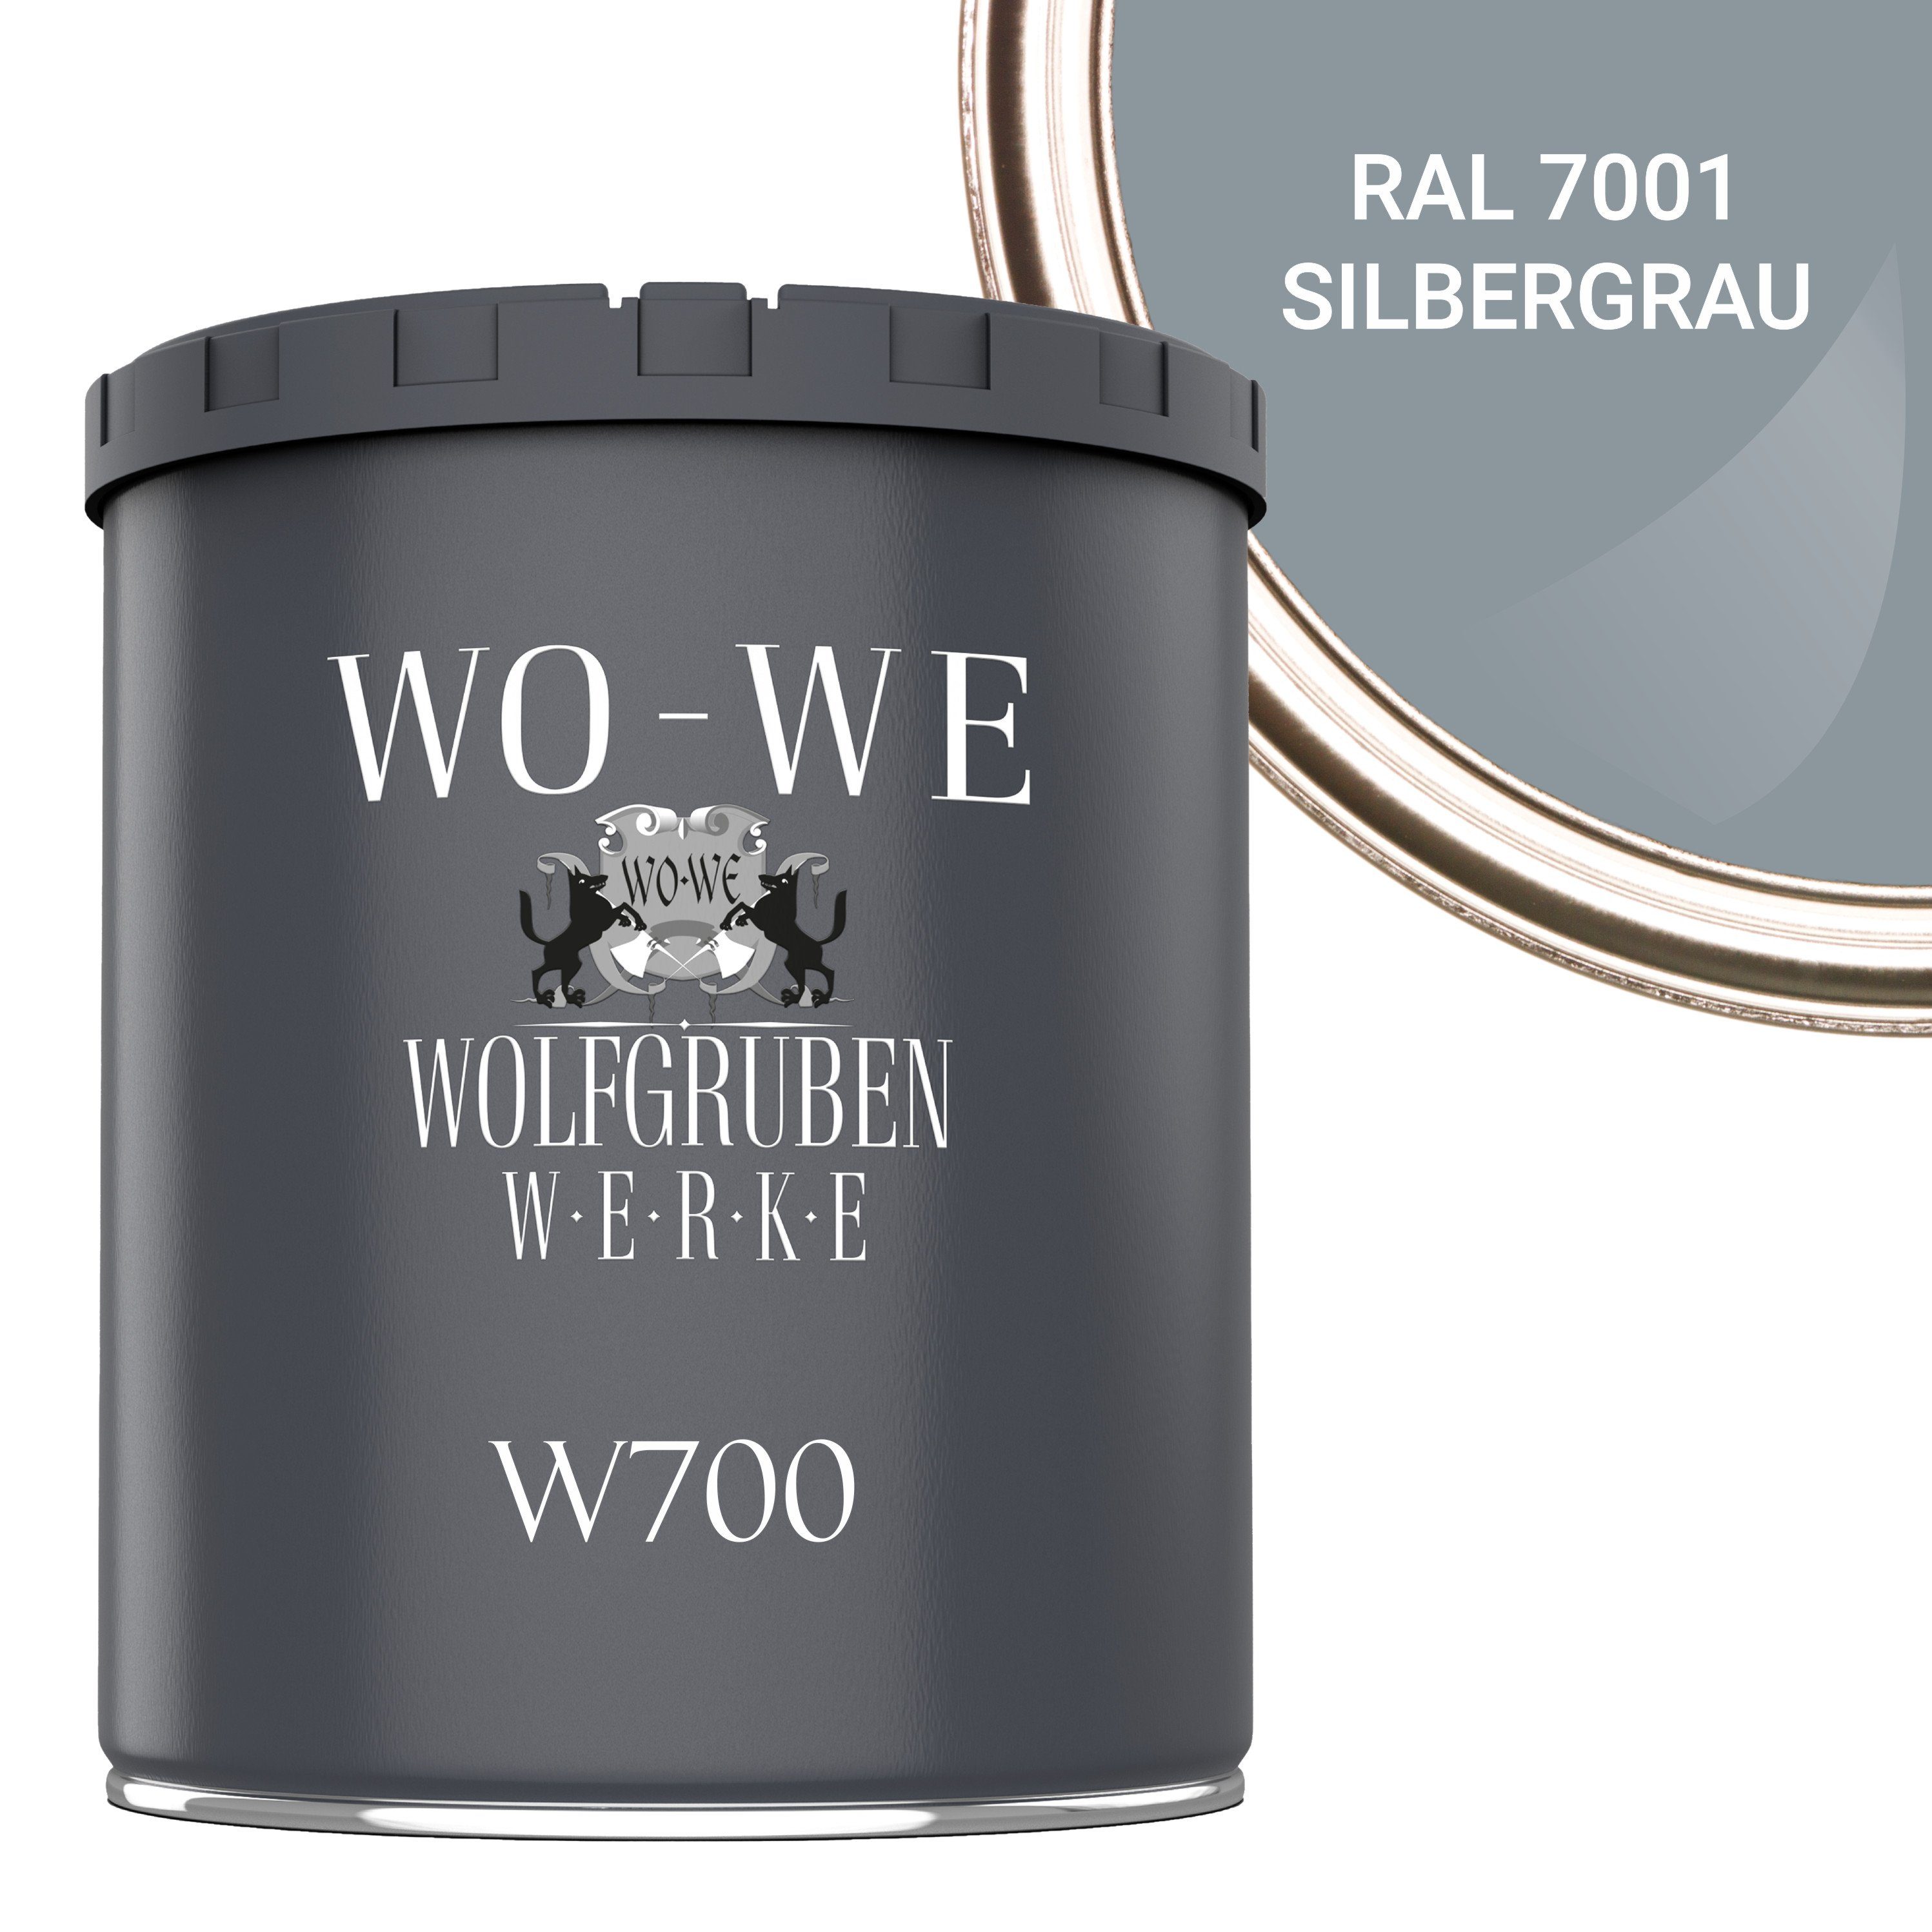 W700, 1-10L, Bodenversiegelung 7001 RAL Betonfarbe Bodenfarbe Bodenbeschichtung Silbergrau Seidenglänzend WO-WE